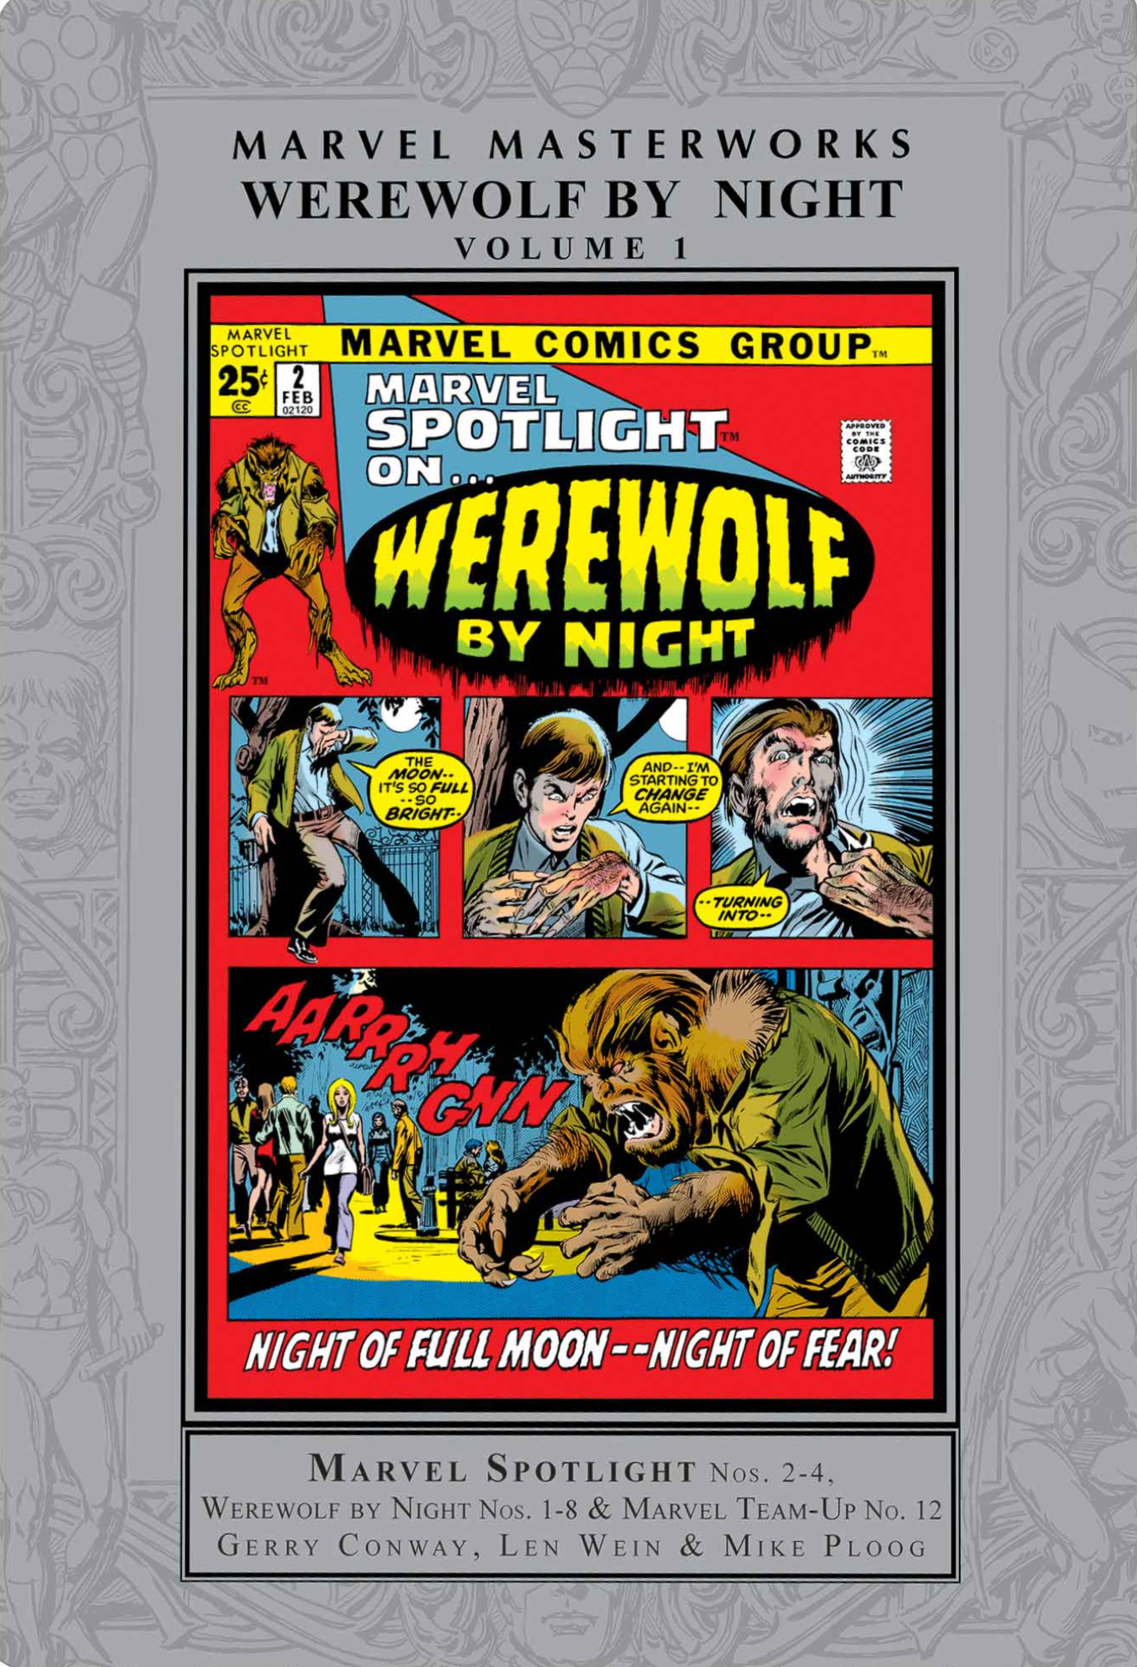 Marvel Masterworks Werewolf by Night Hardcover Volume 1